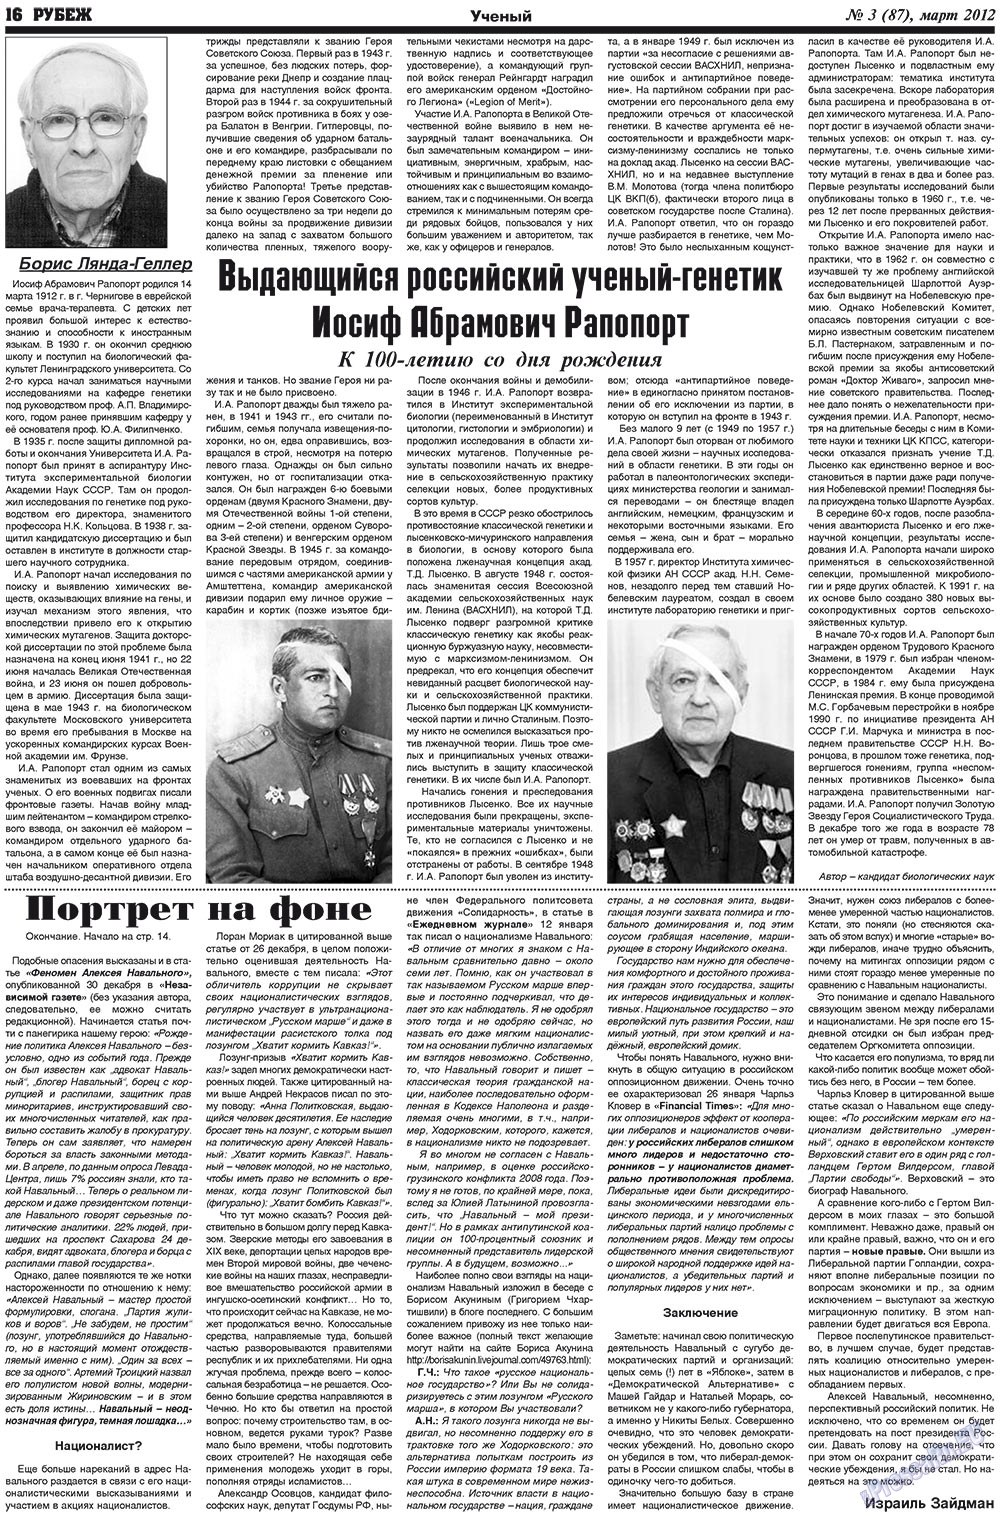 Рубеж (газета). 2012 год, номер 3, стр. 16